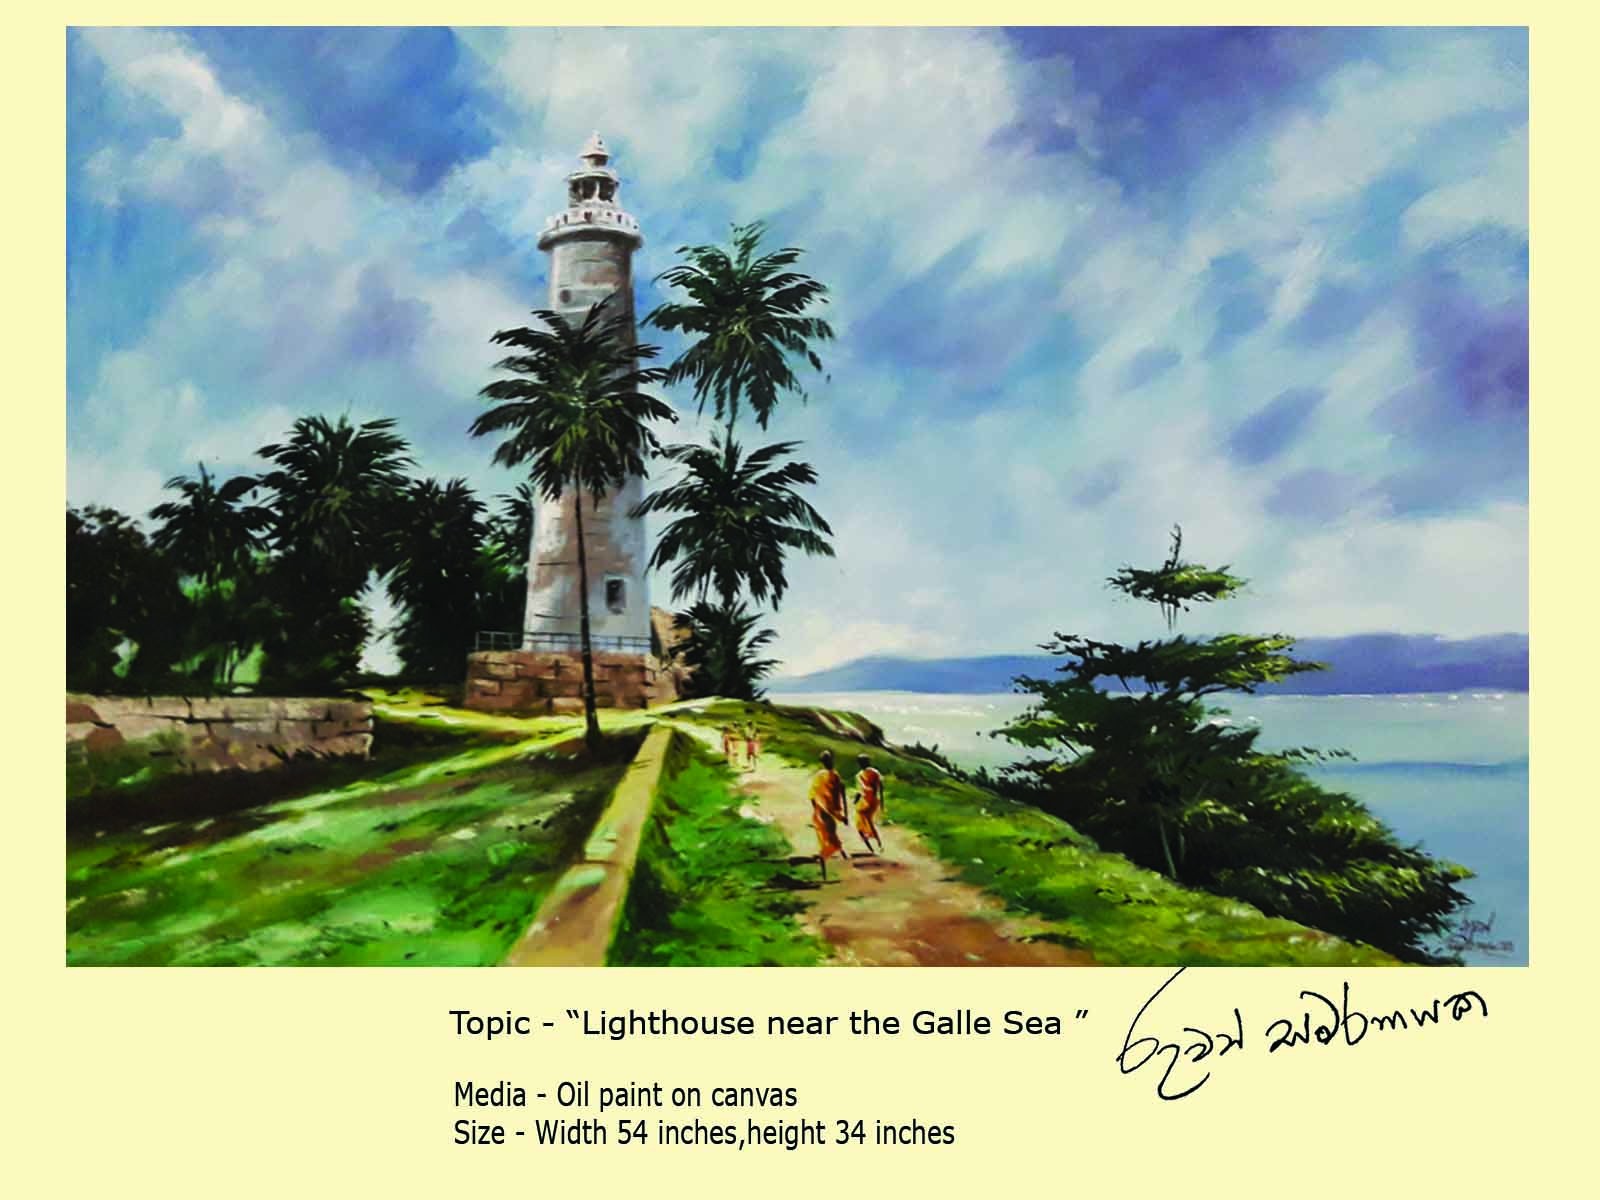 light house near the galle sea by Ruwan Chaminda Samaranayake